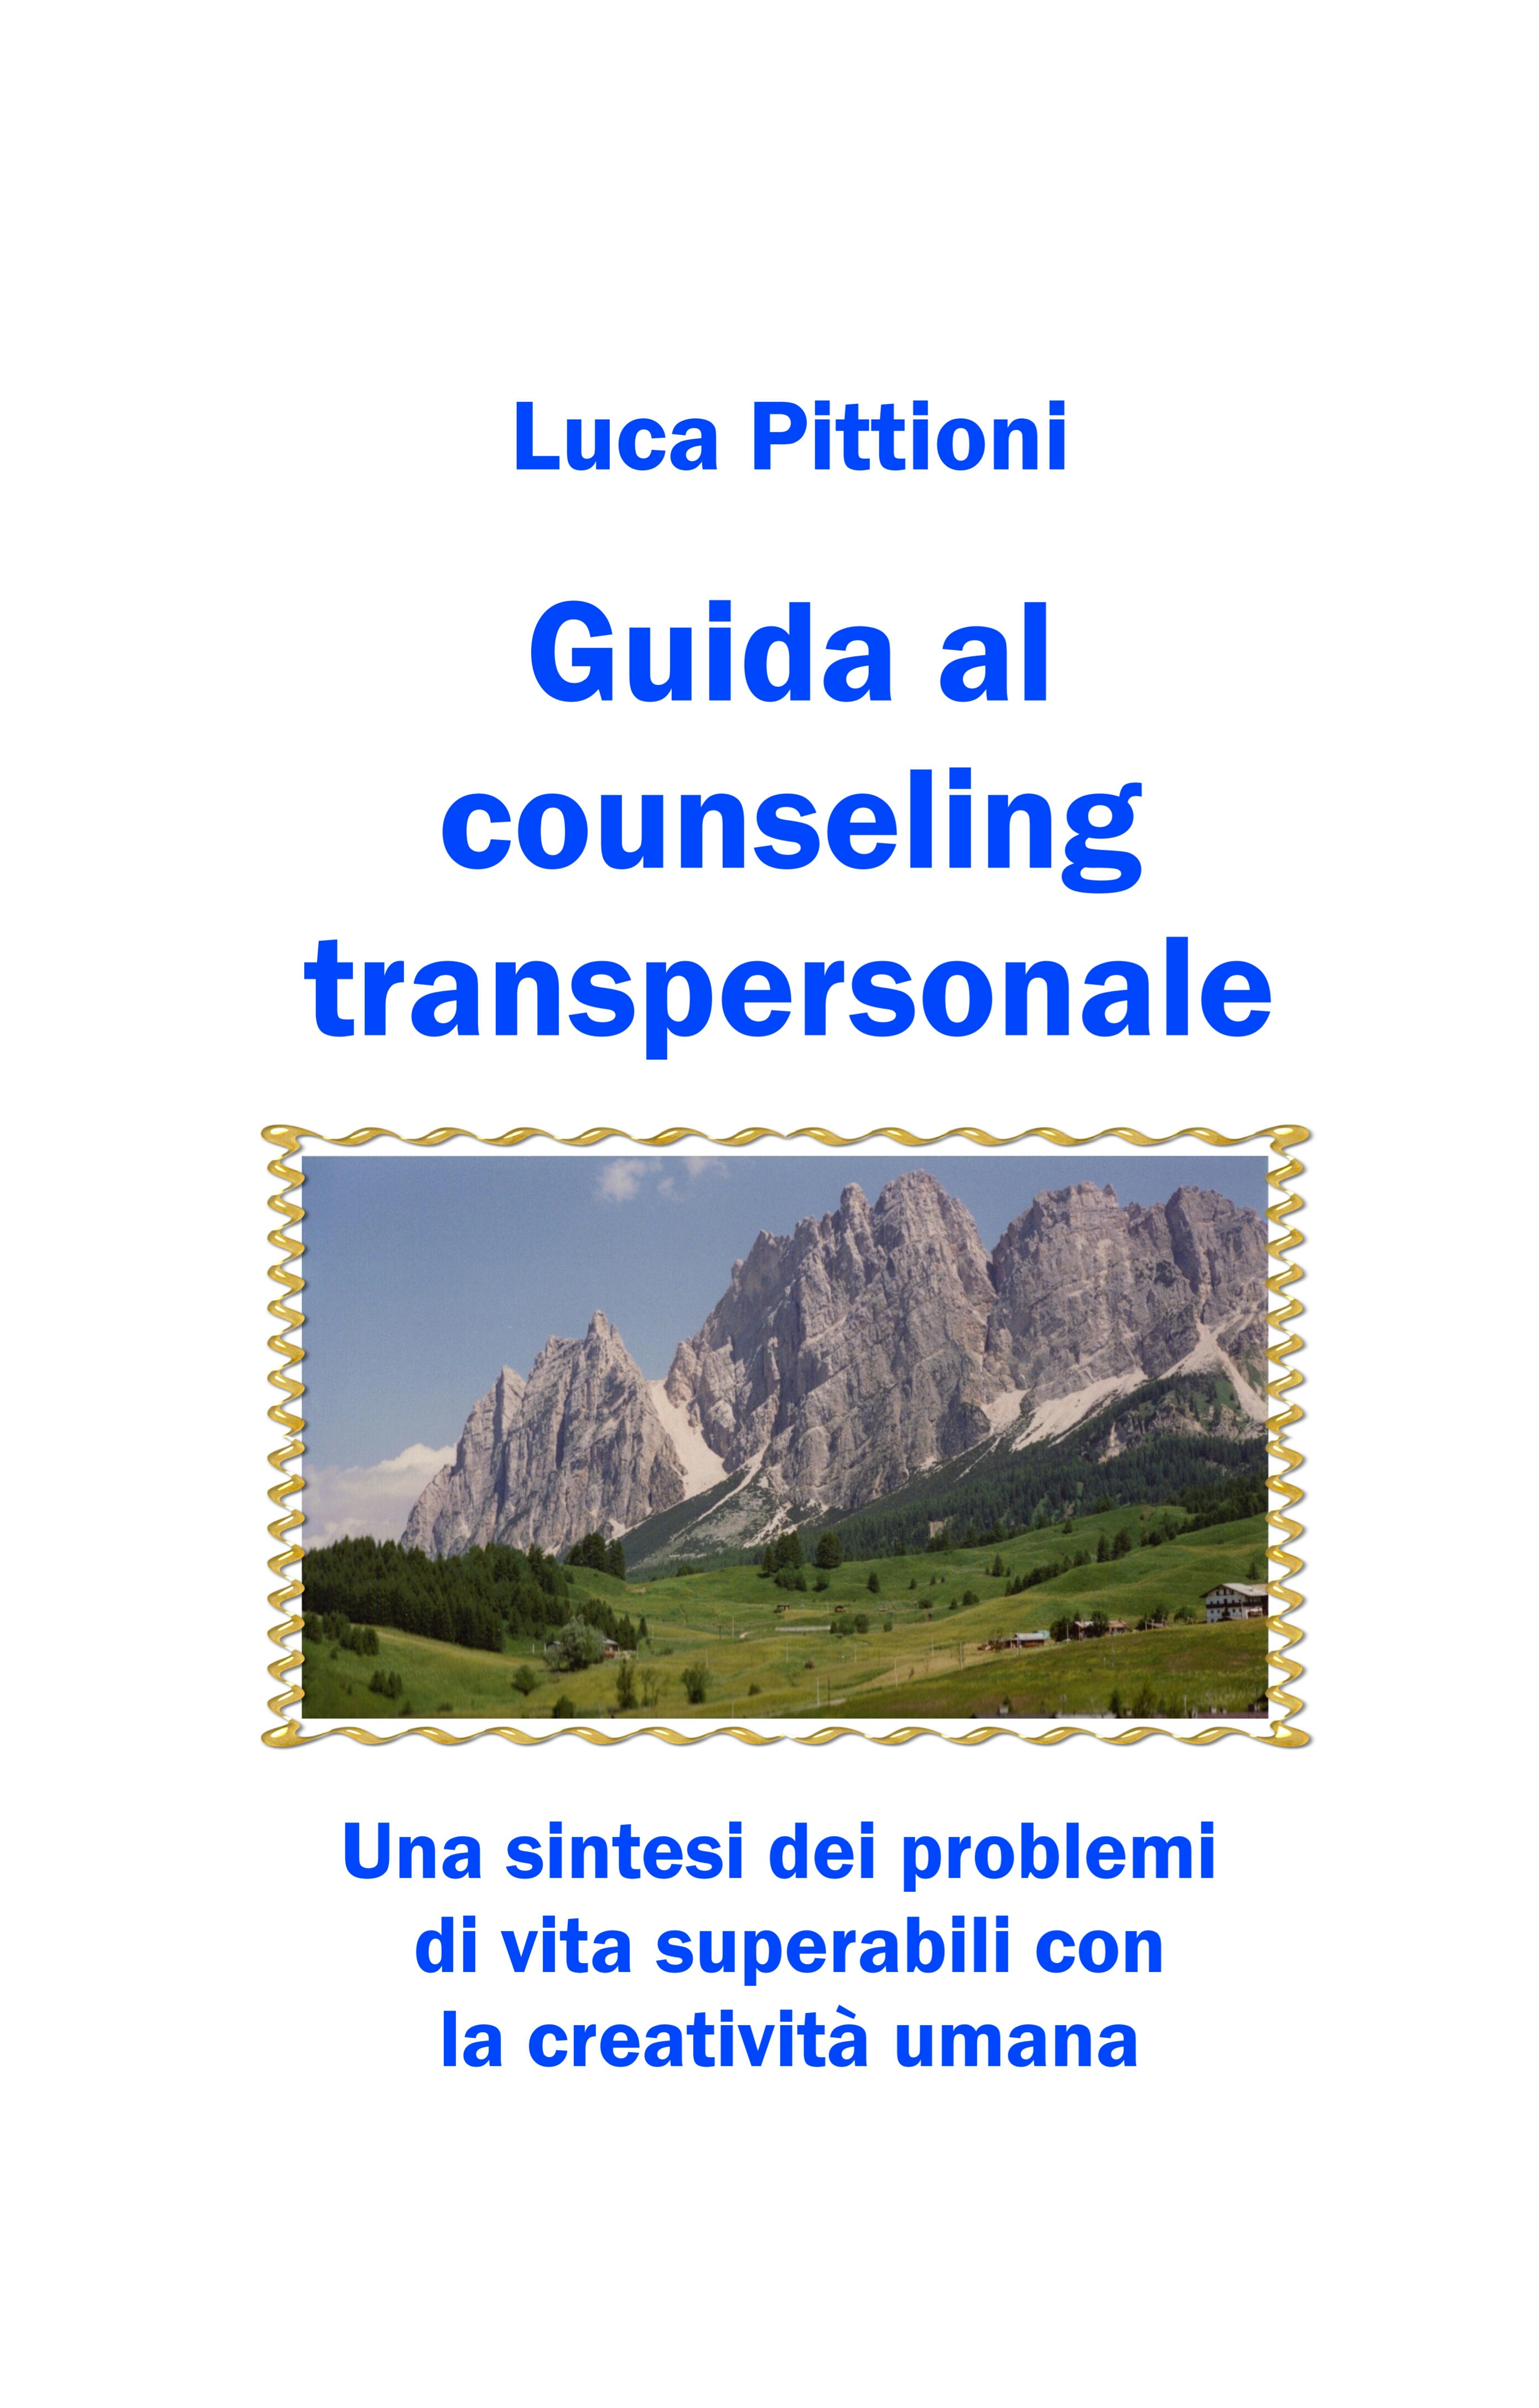 Guida al counseling transpersonale : una sintesi dei problemi di vita superabili con la creatività umana)